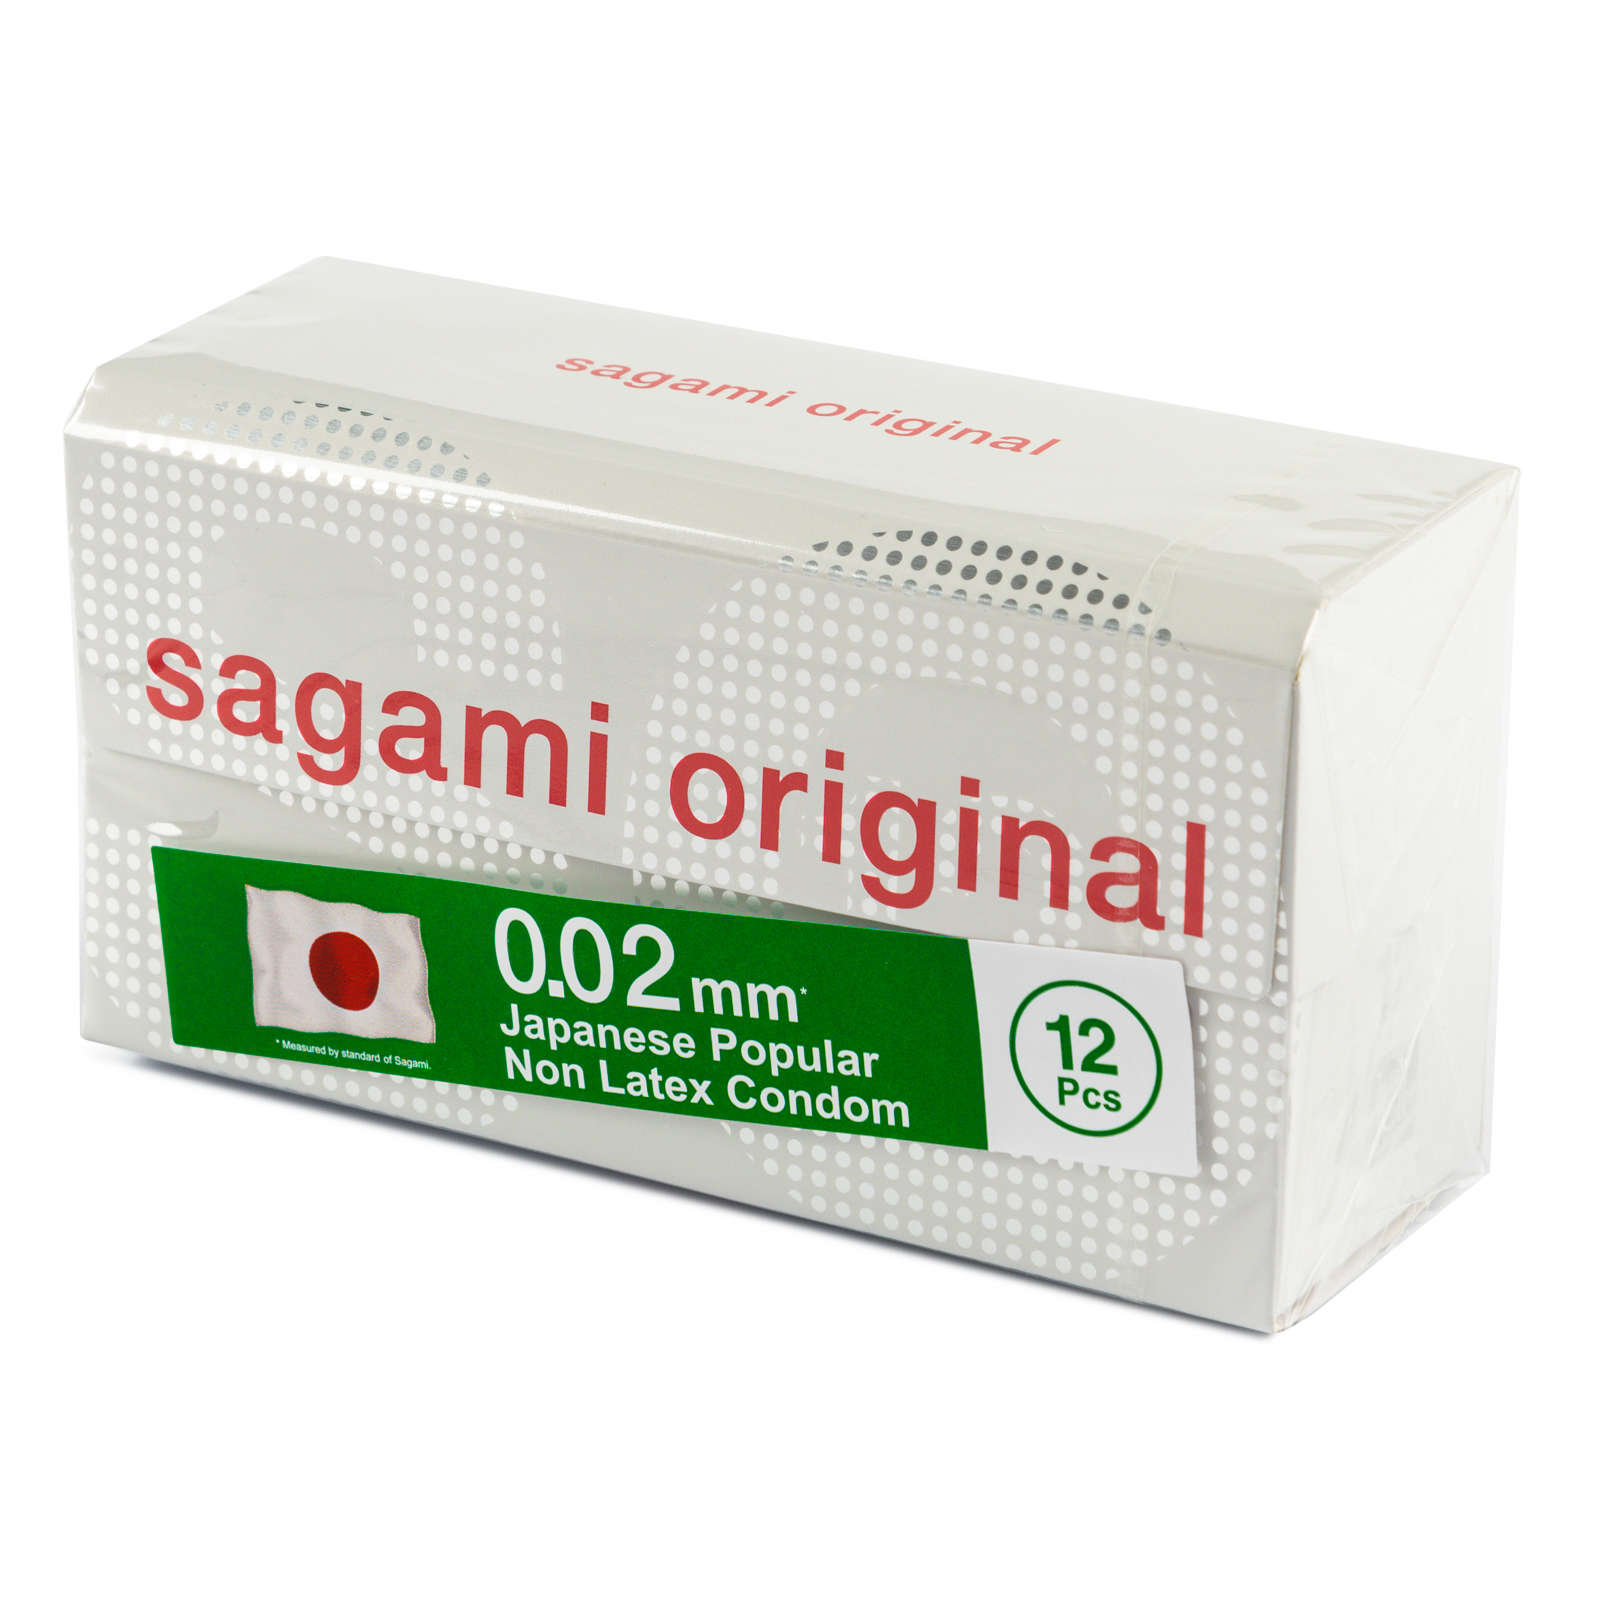 Sagami Original 0.02  УЛЬТРАТОНКИЕ, полиуретан №12